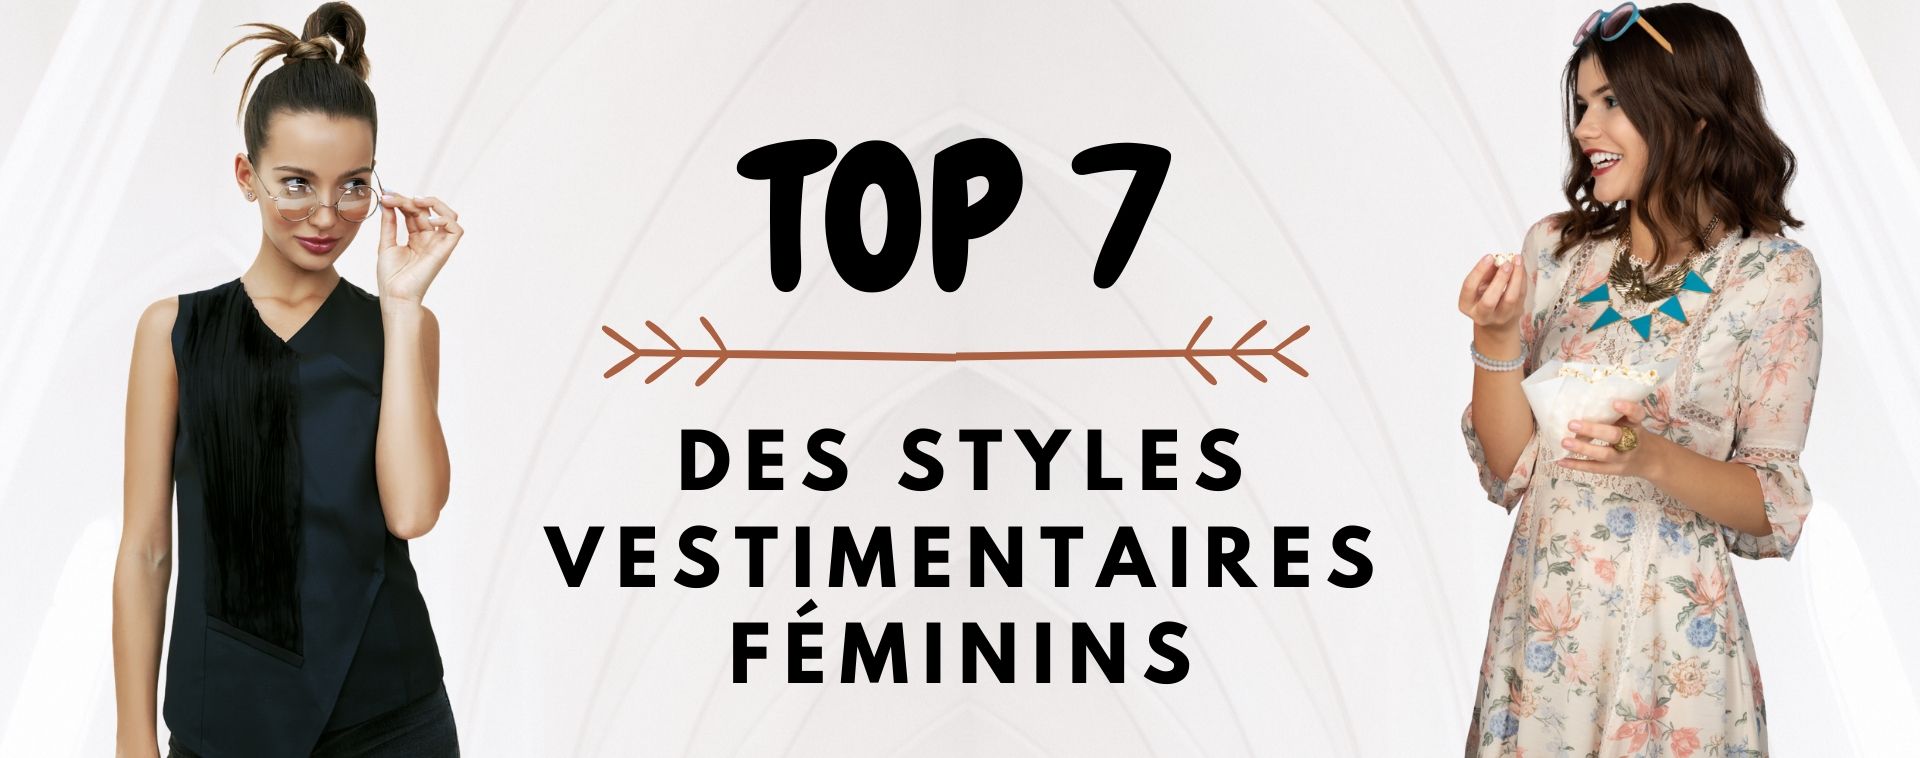 Top 7 des styles vestimentaires féminins - Vie De Bohème